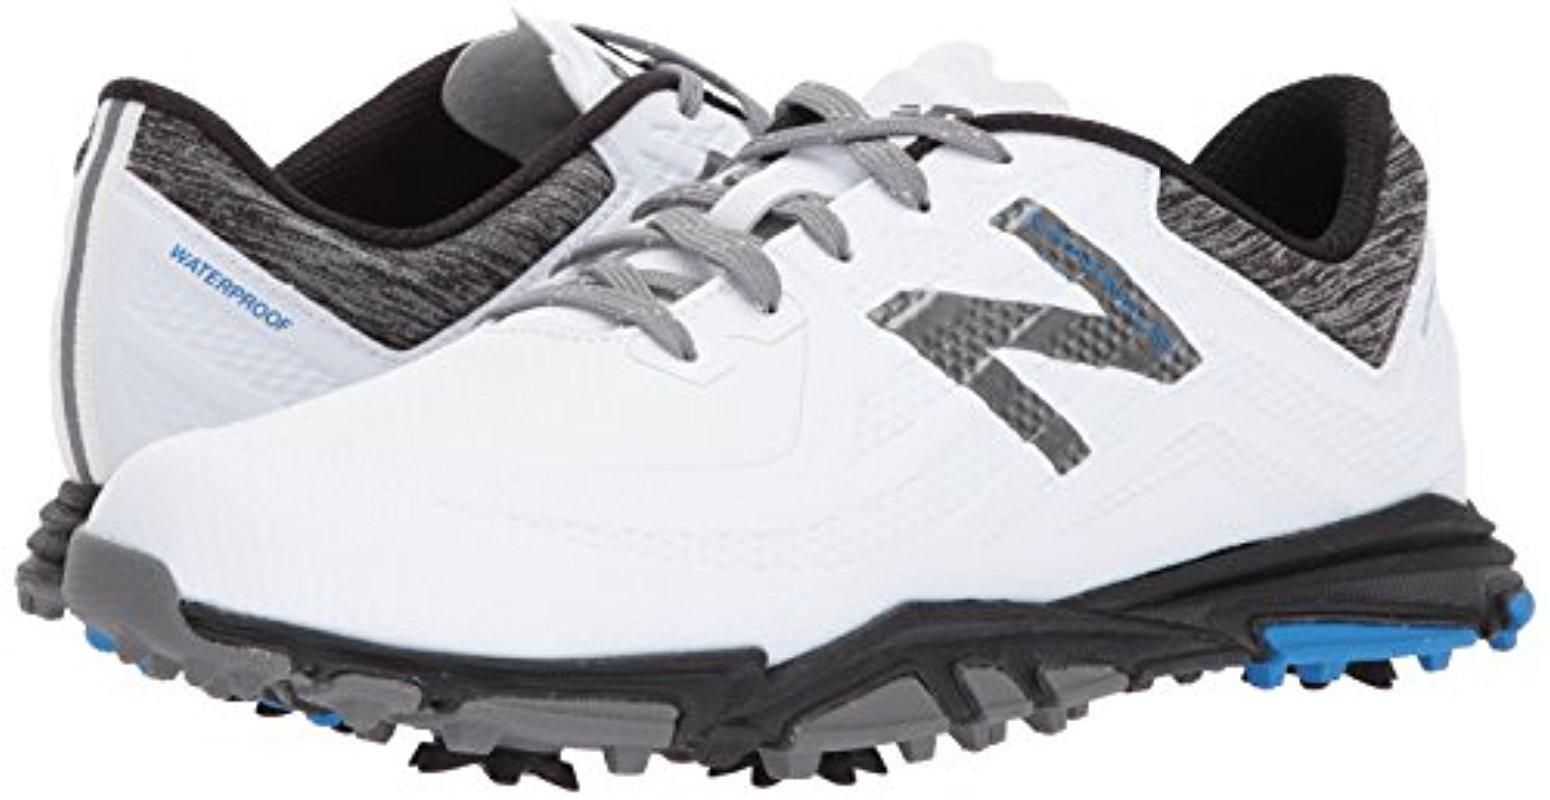 New Balance Rubber Minimus Tour Golf Shoe for Men - Lyst